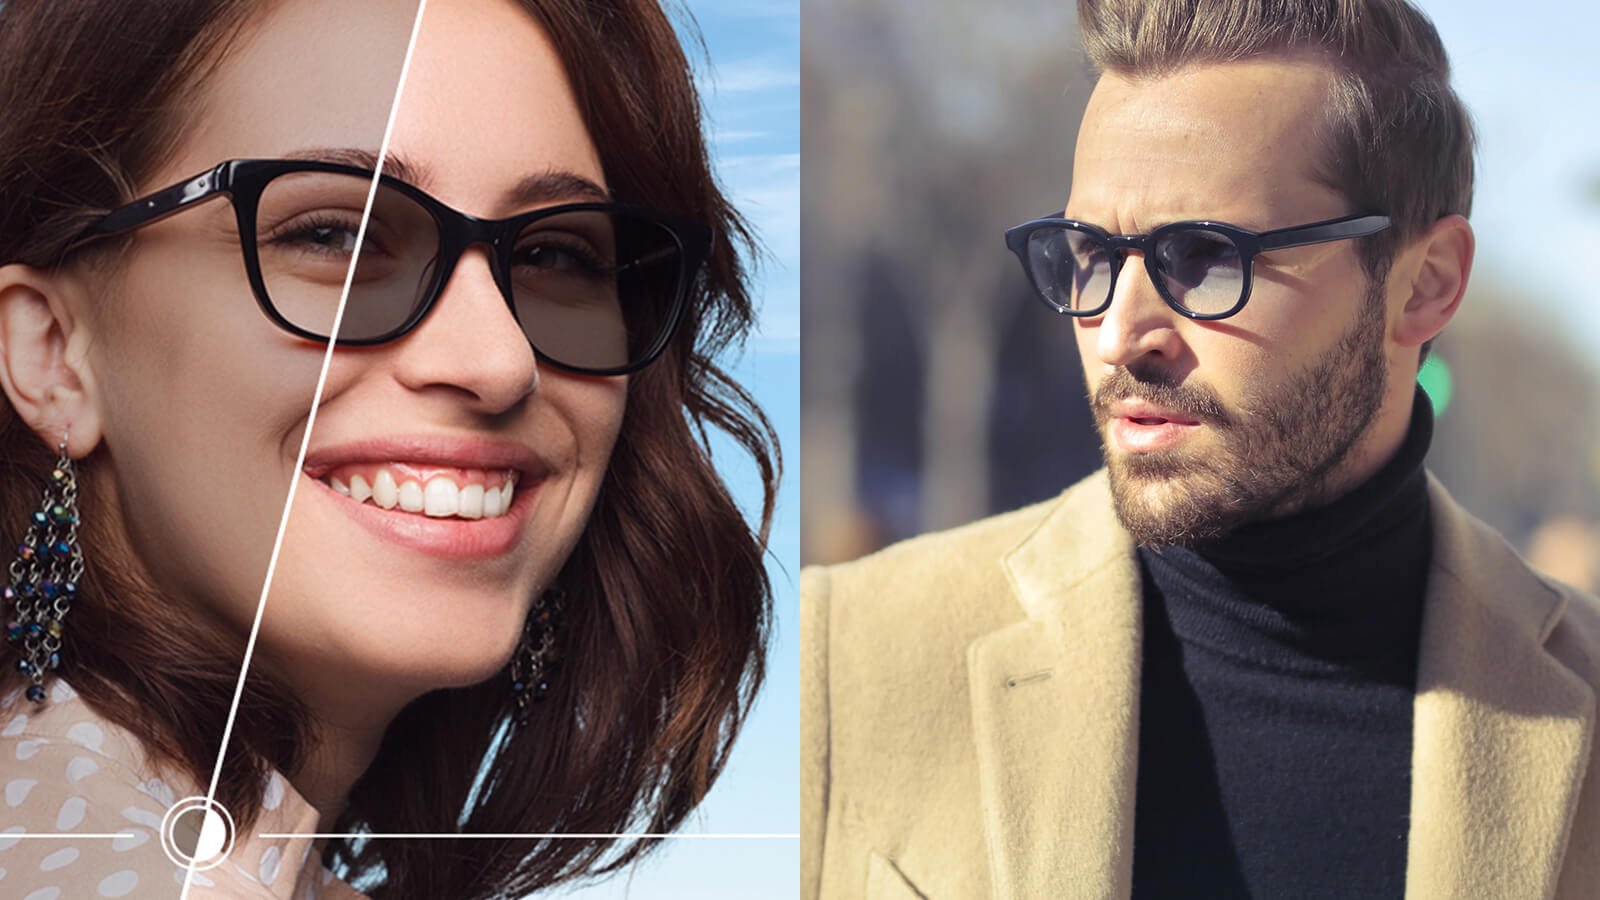 Who wins in Prescription sunglasses vs transition lenses?